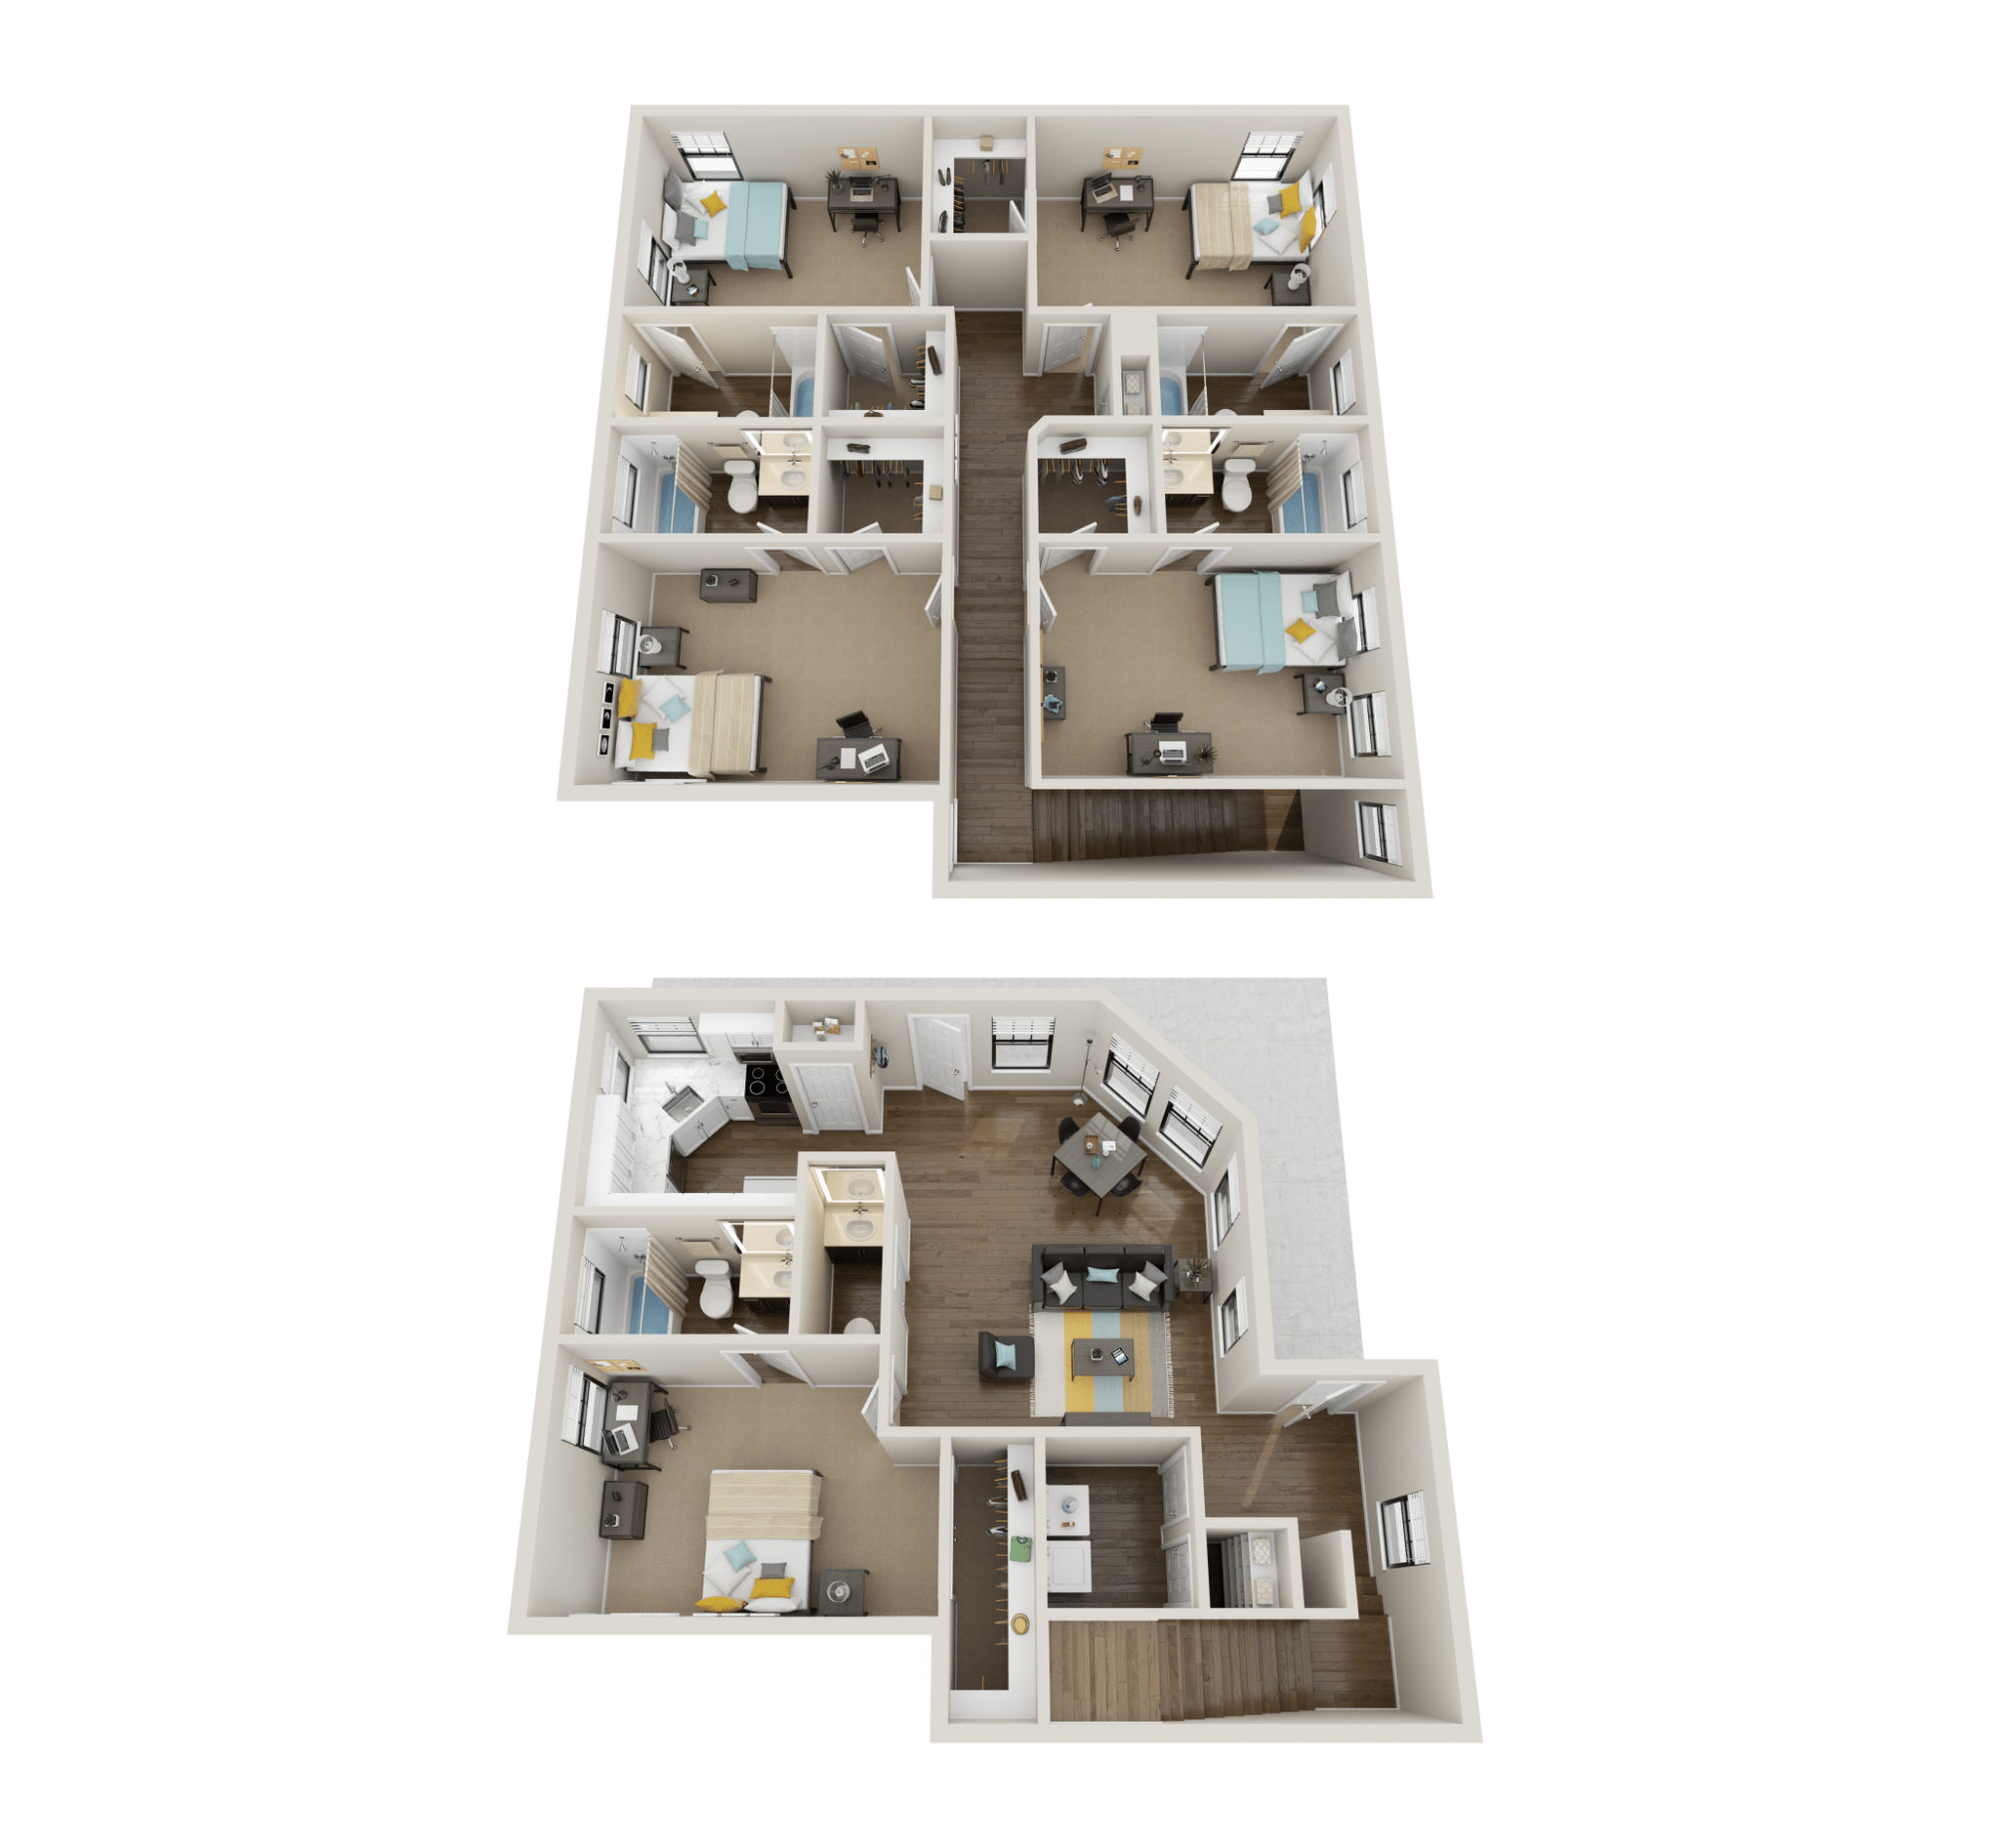 5x5.5 corner premium floor plan collective at clemson off campus apartments 1